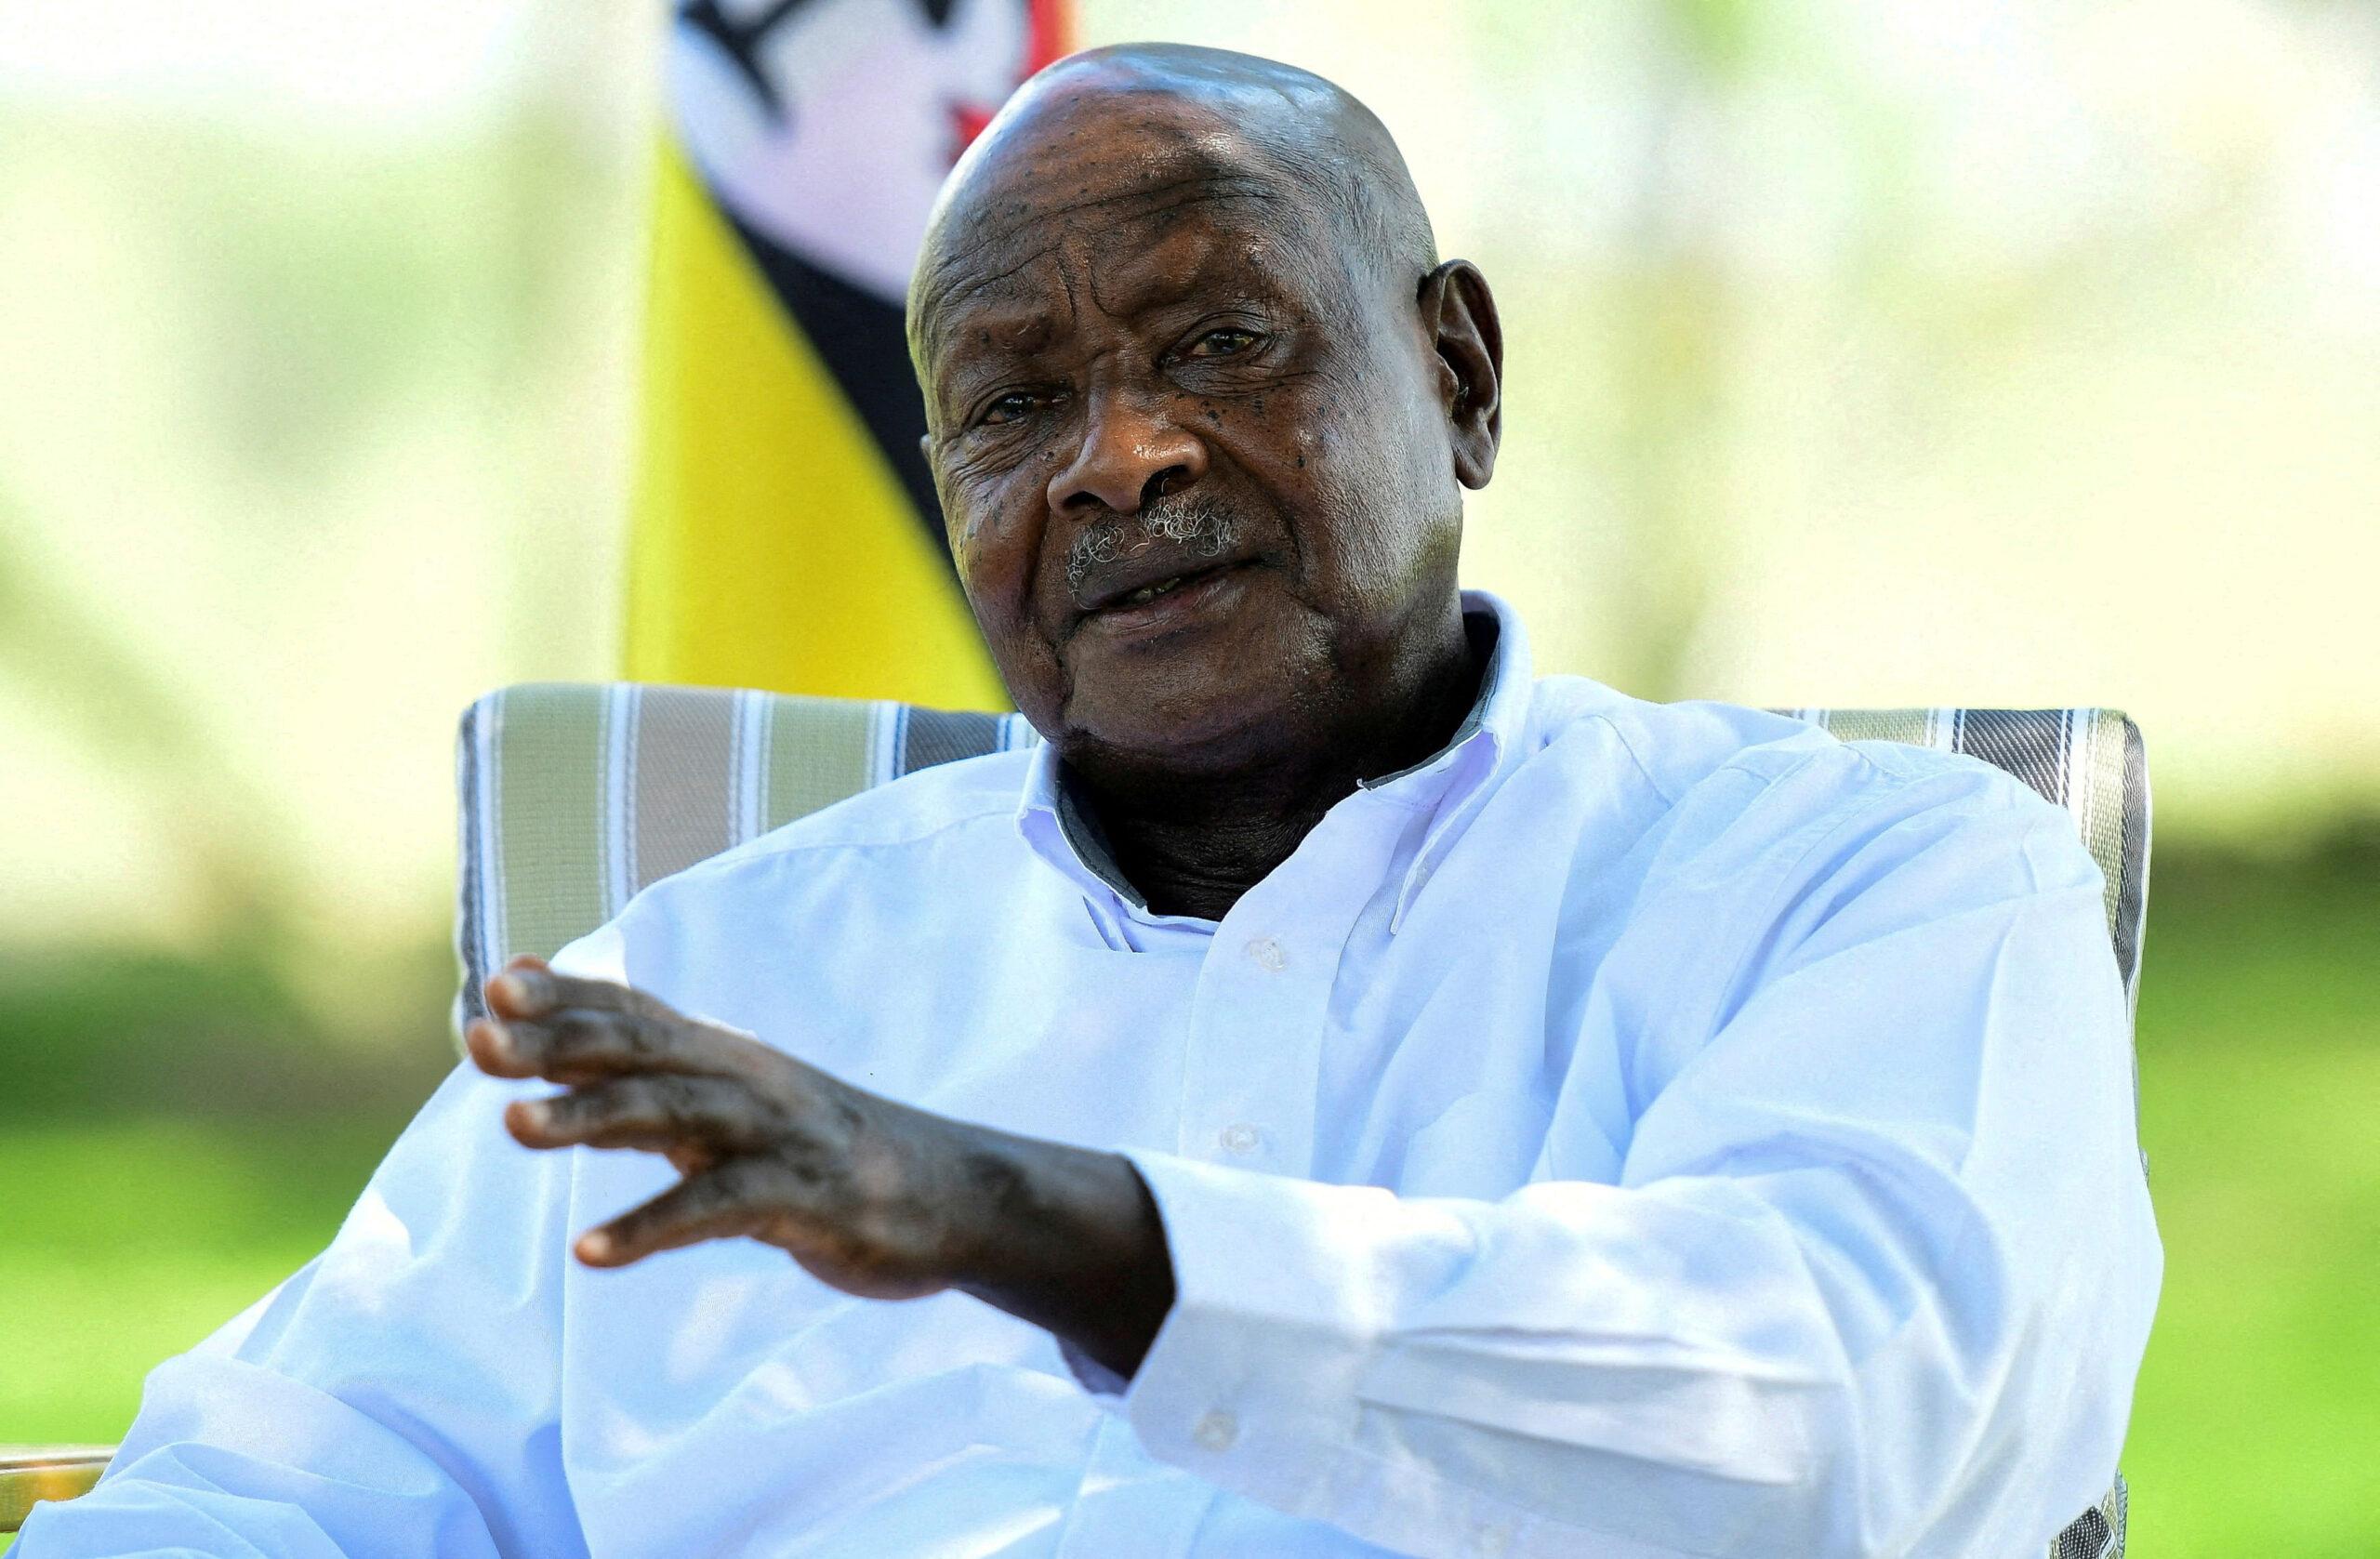 Le président de l’Ouganda promet de retrouver les meurtriers d’un couple de touristes étrangers